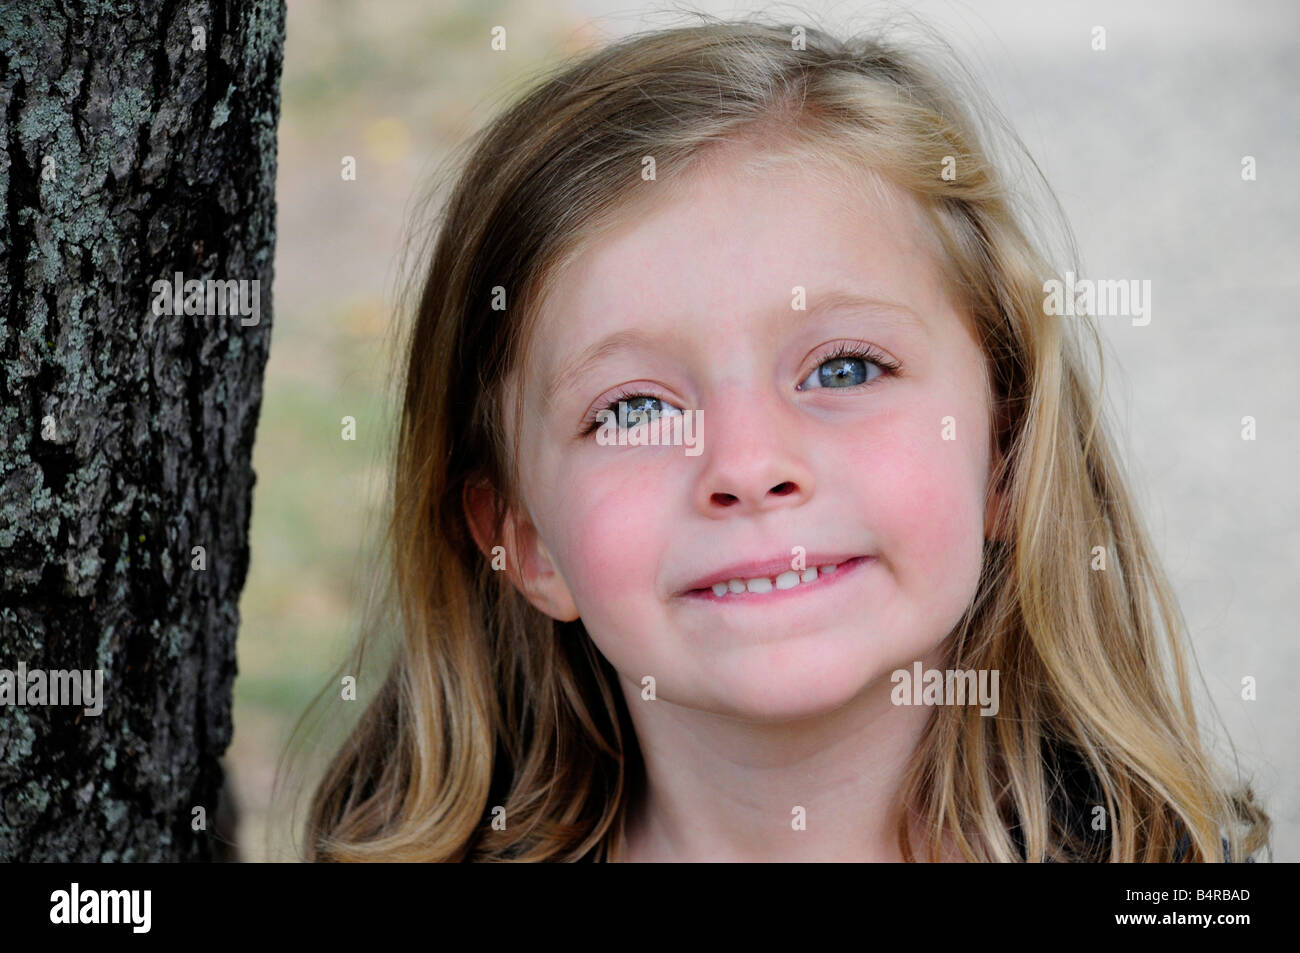 Little girl smiling outside Stock Photo